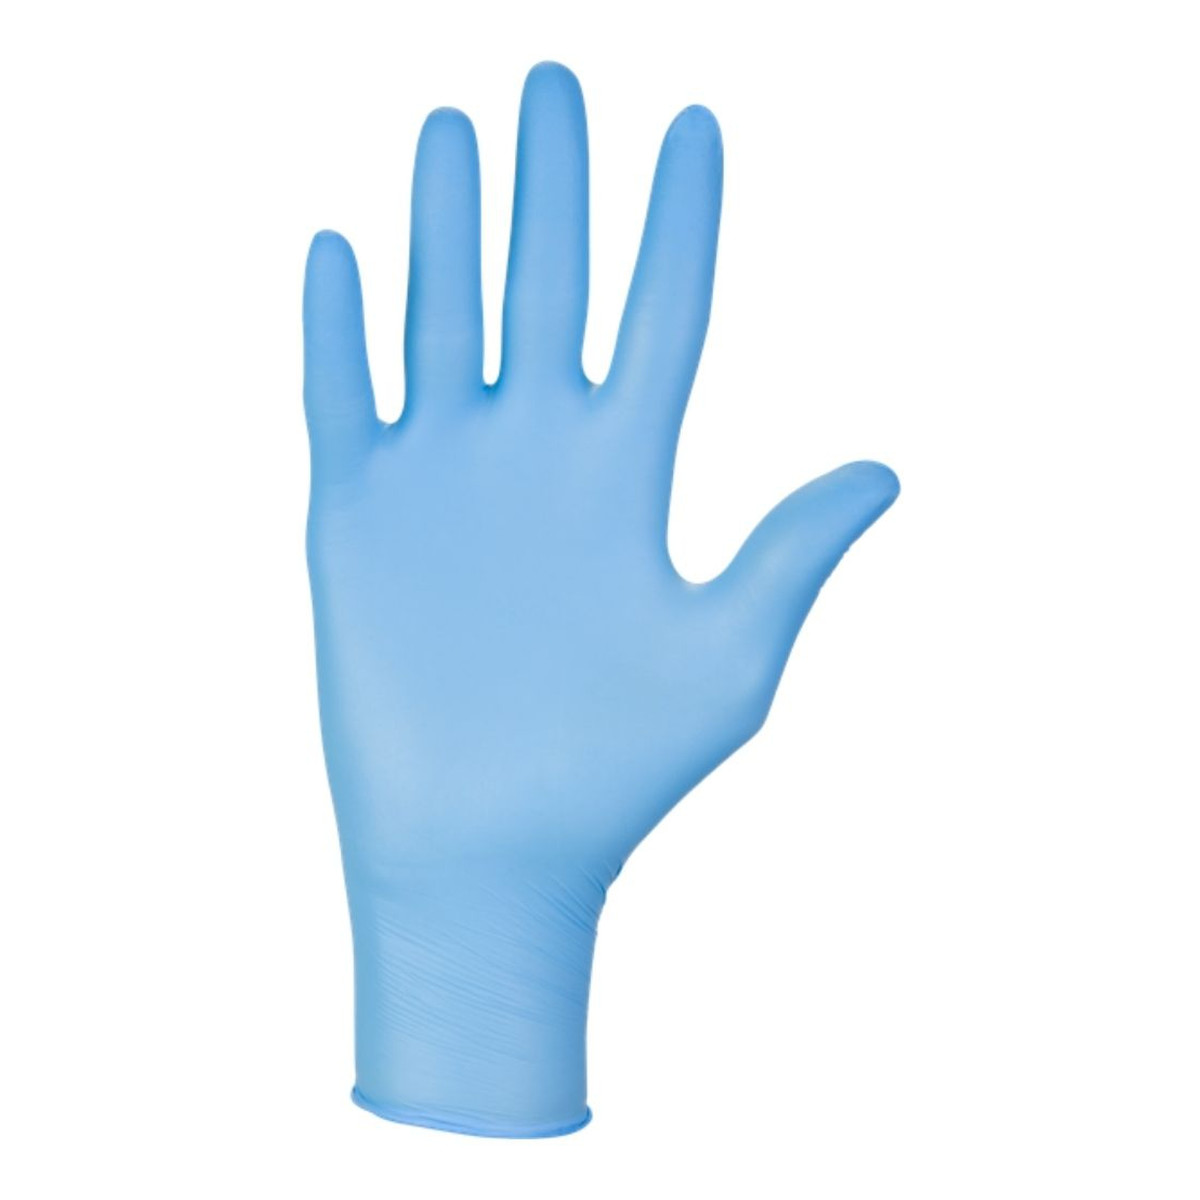 Nitrylex Bezpudrowe rękawice nitrylowe XL 100 szt. Niebieskie